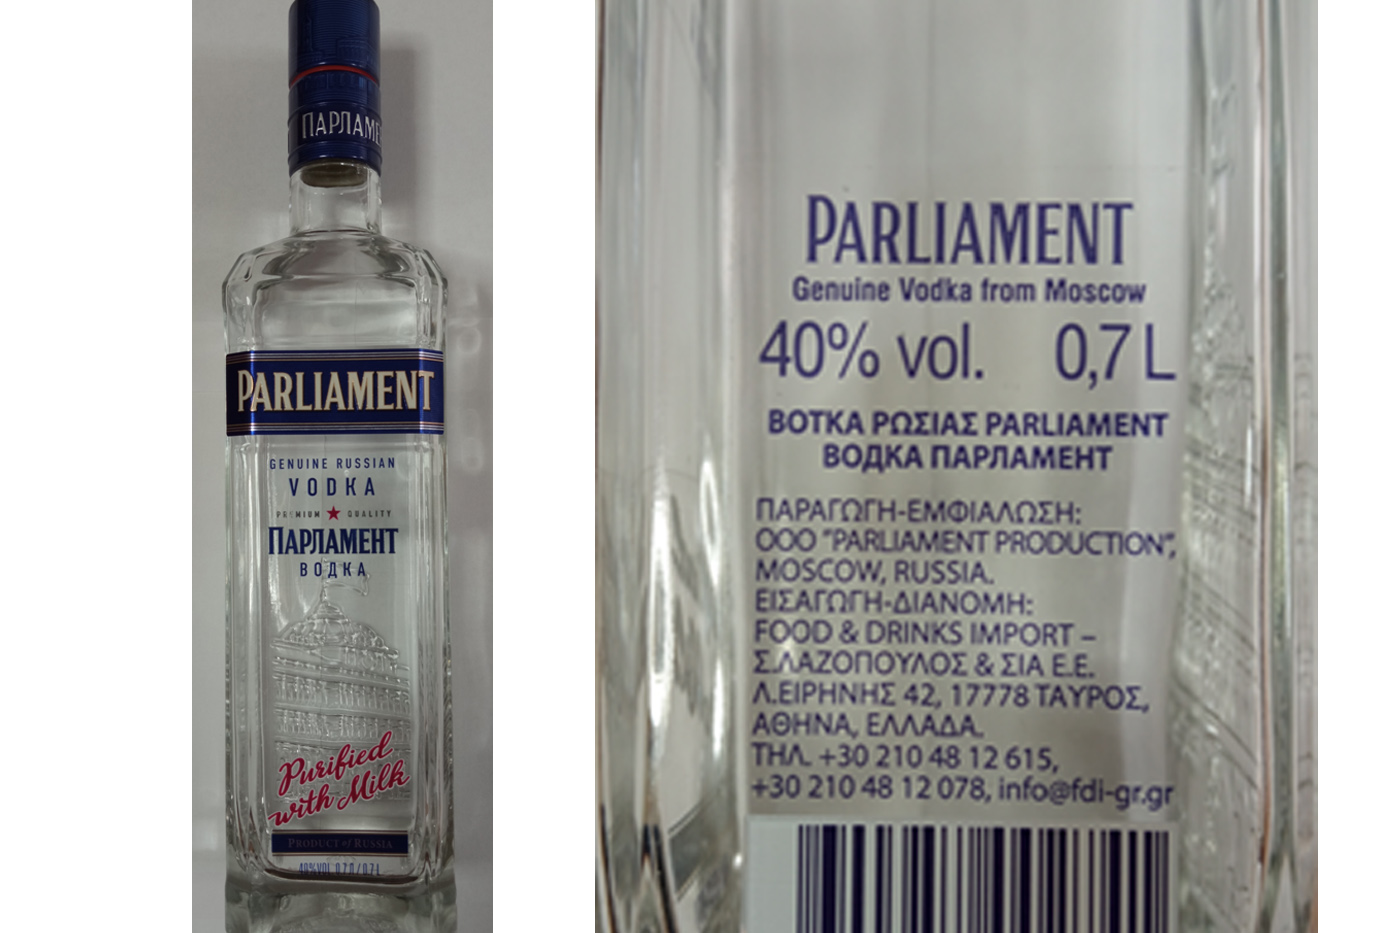 ΑΑΔΕ: Ανακλήθηκε από την ελληνική αγορά αλκοολούχο ποτό προέλευσης Ρωσίας